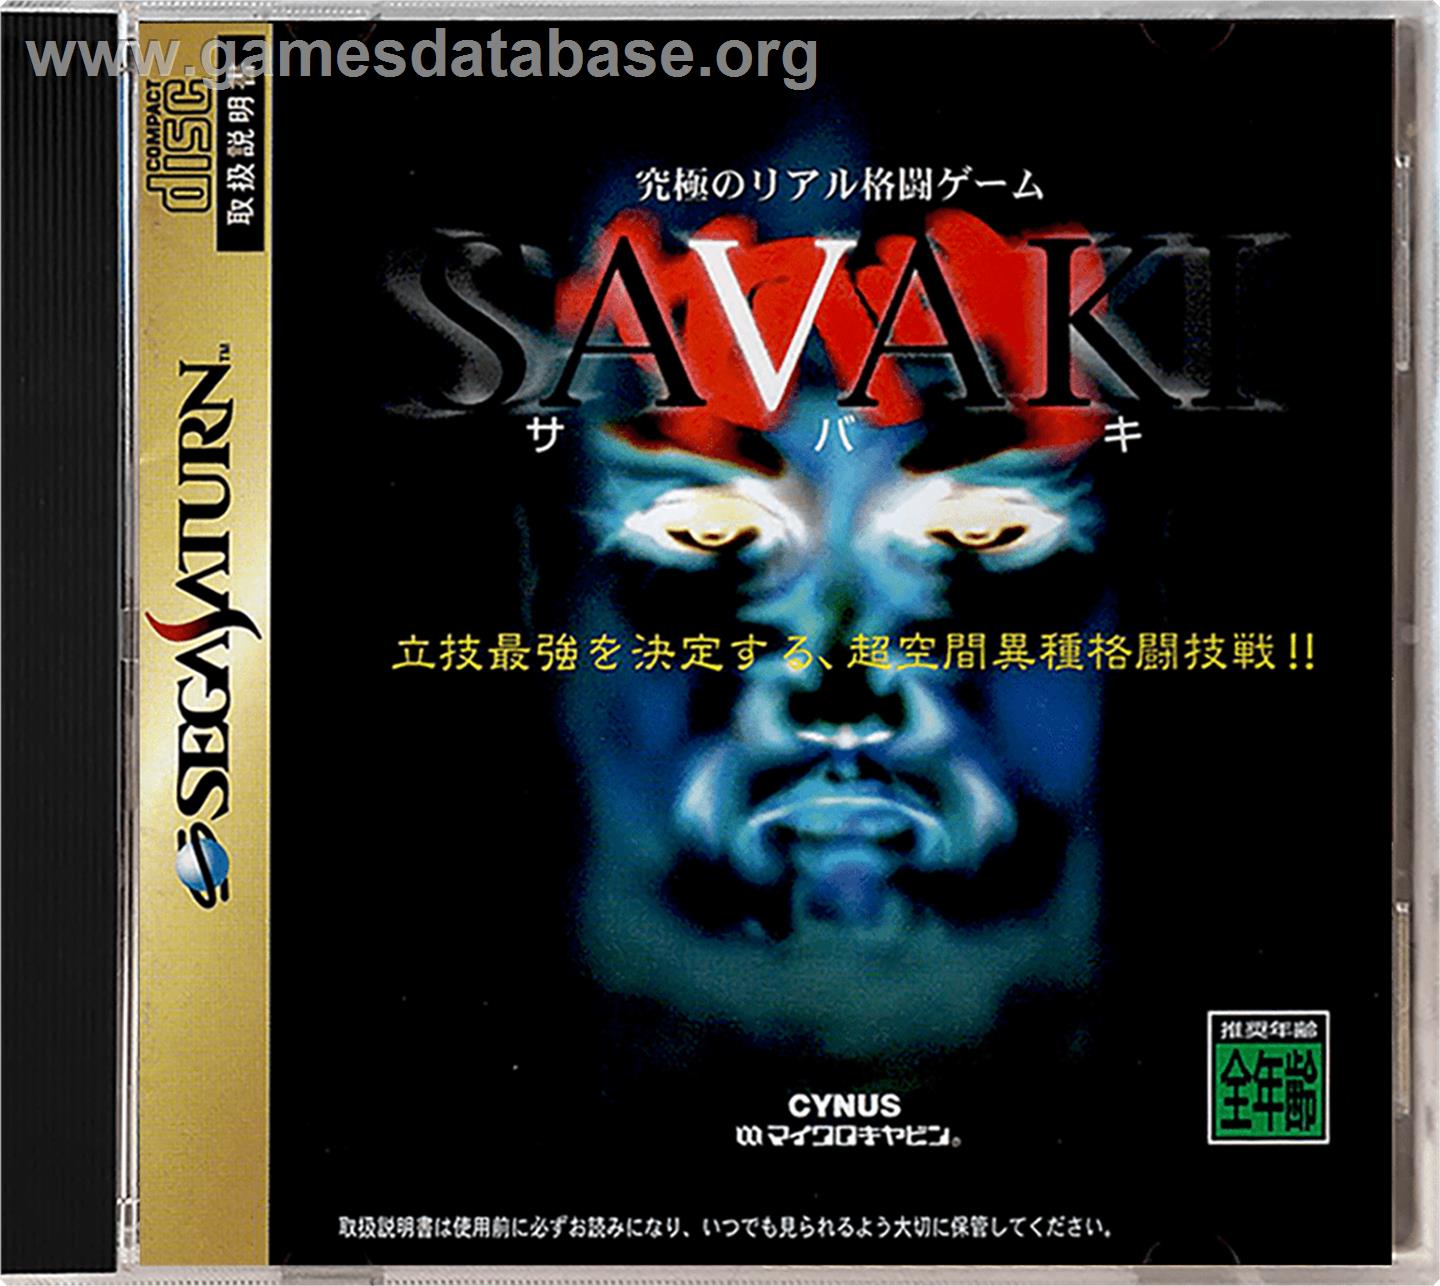 Savaki - Sega Saturn - Artwork - Box